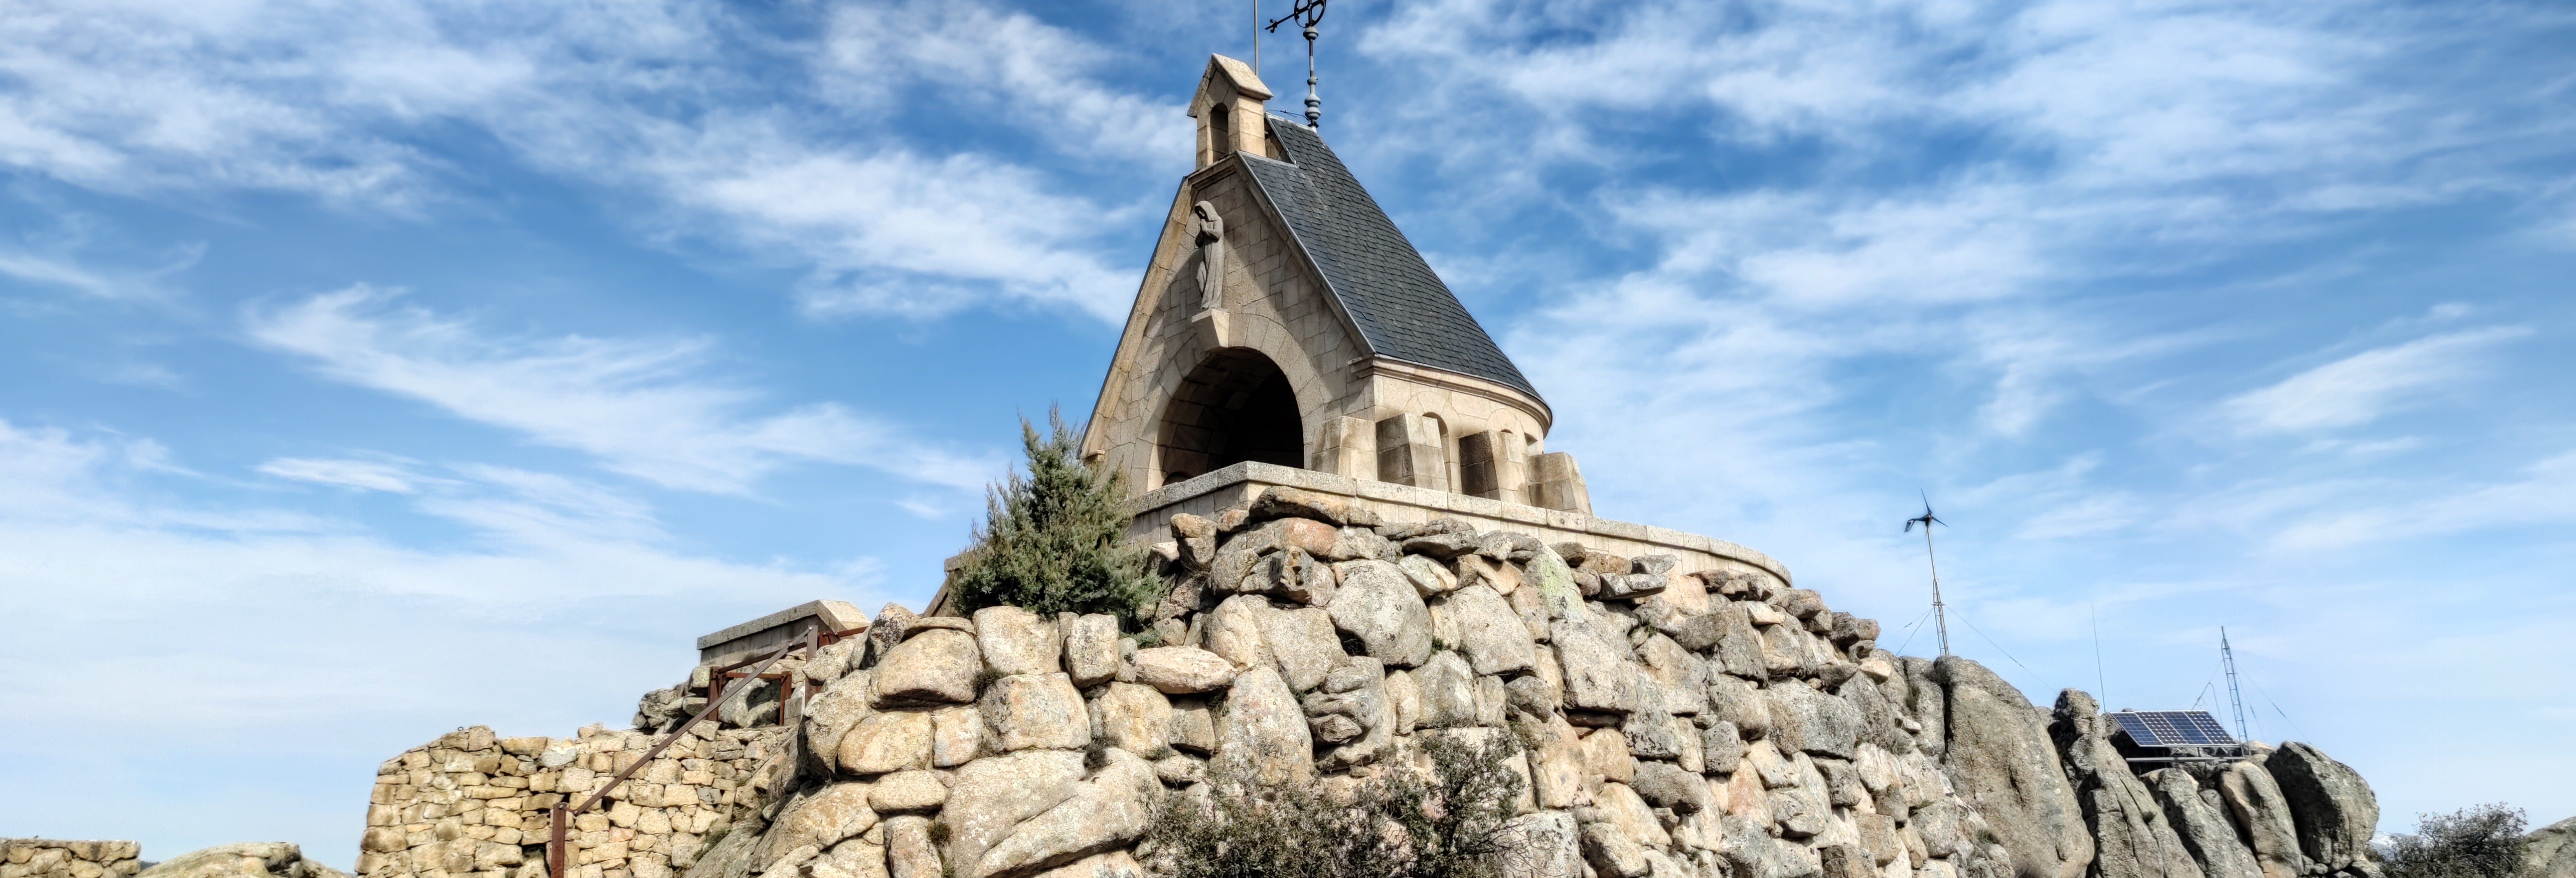 Excursión de senderismo por el Vía Crucis del Valle de los Caídos desde Guadarrama